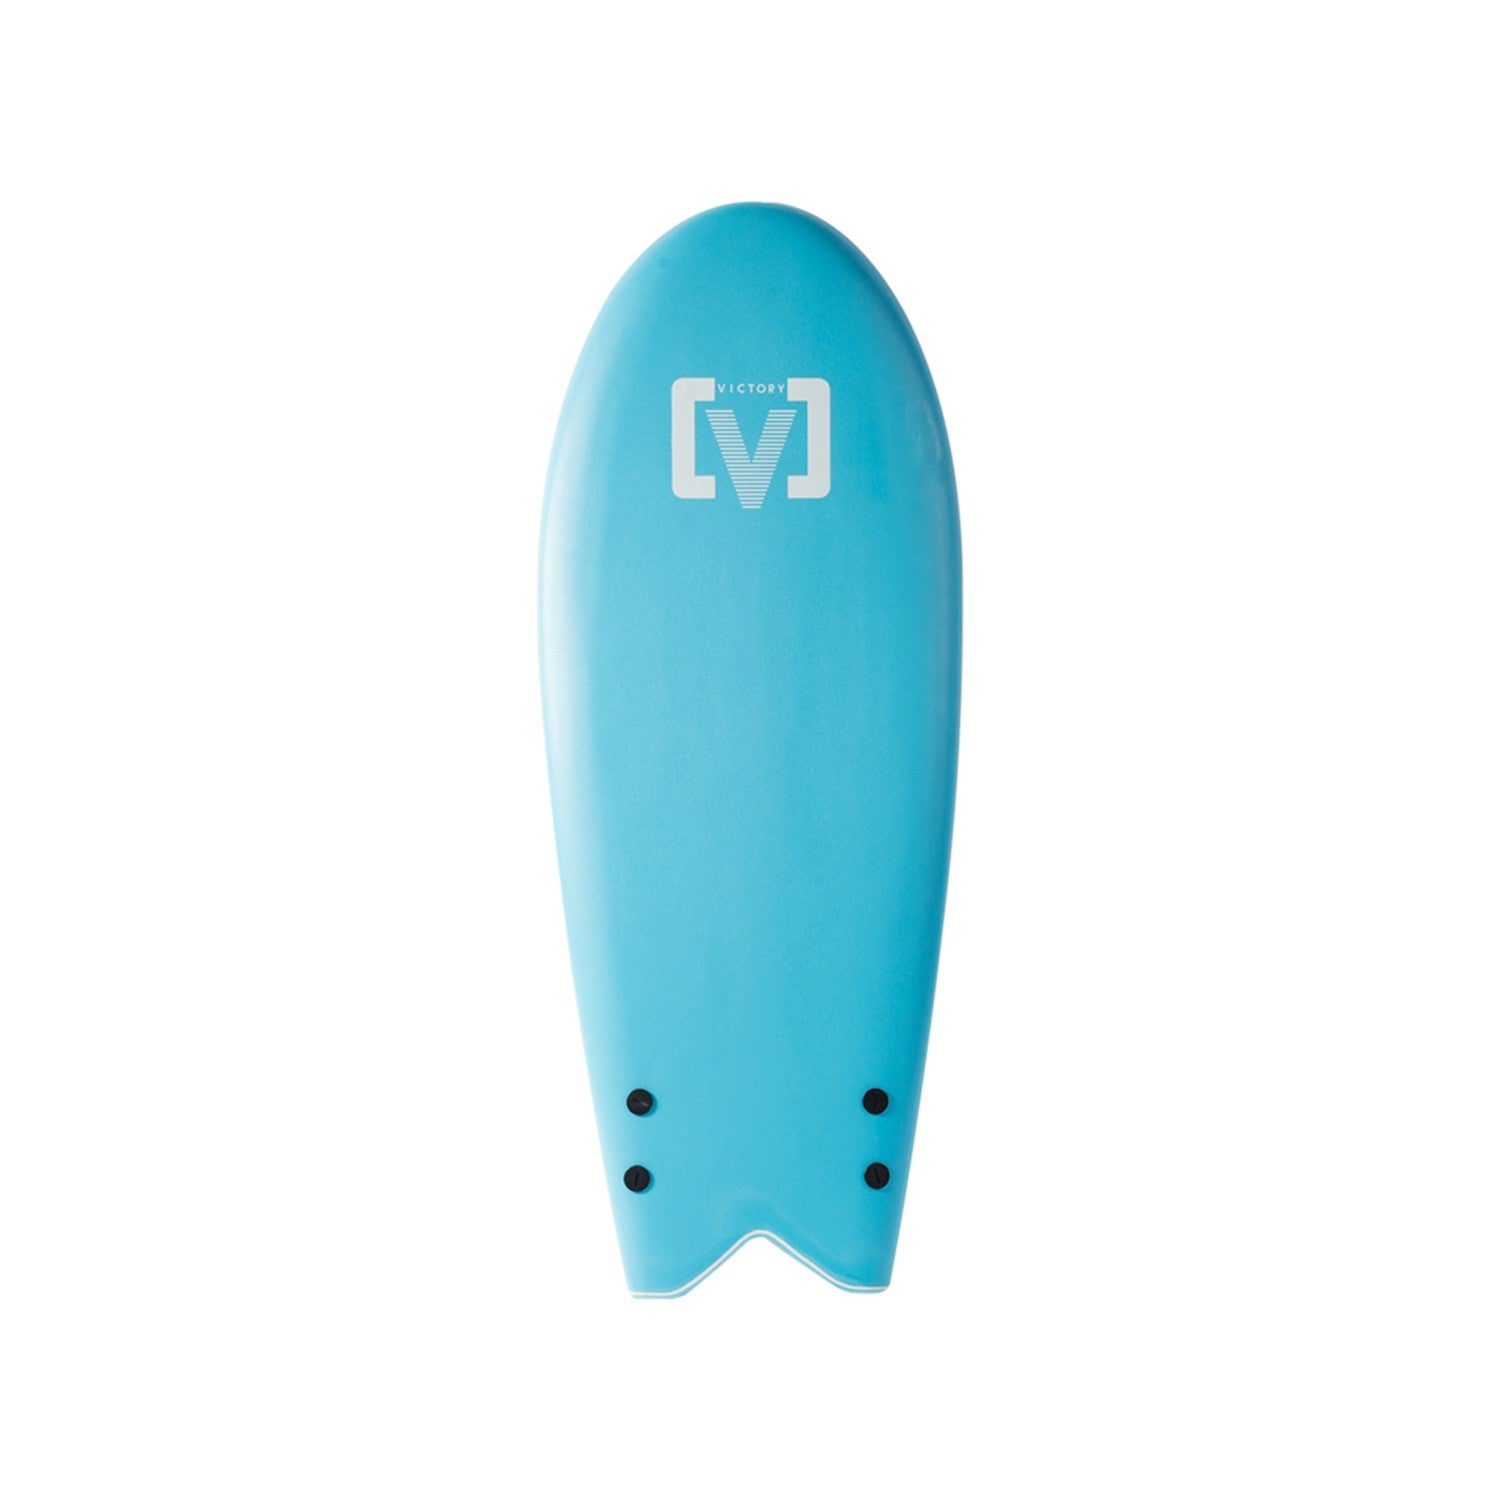 VICTORY - EPS Softboard - Foam Surfboard - Torpedo 4'7 - Sky Blue 